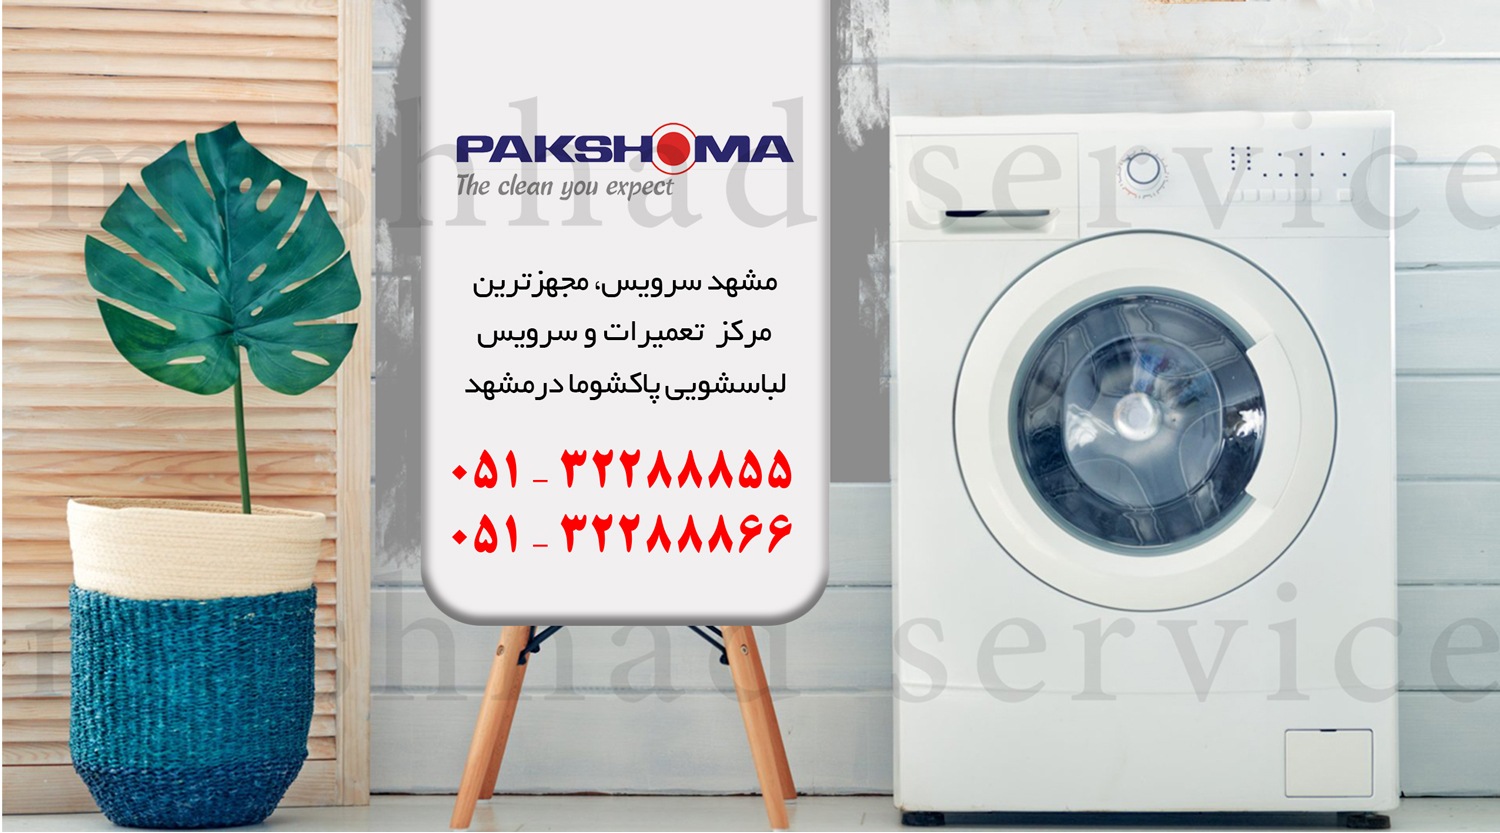 تعمیر ماشین لباسشویی پاکشوما در مشهد